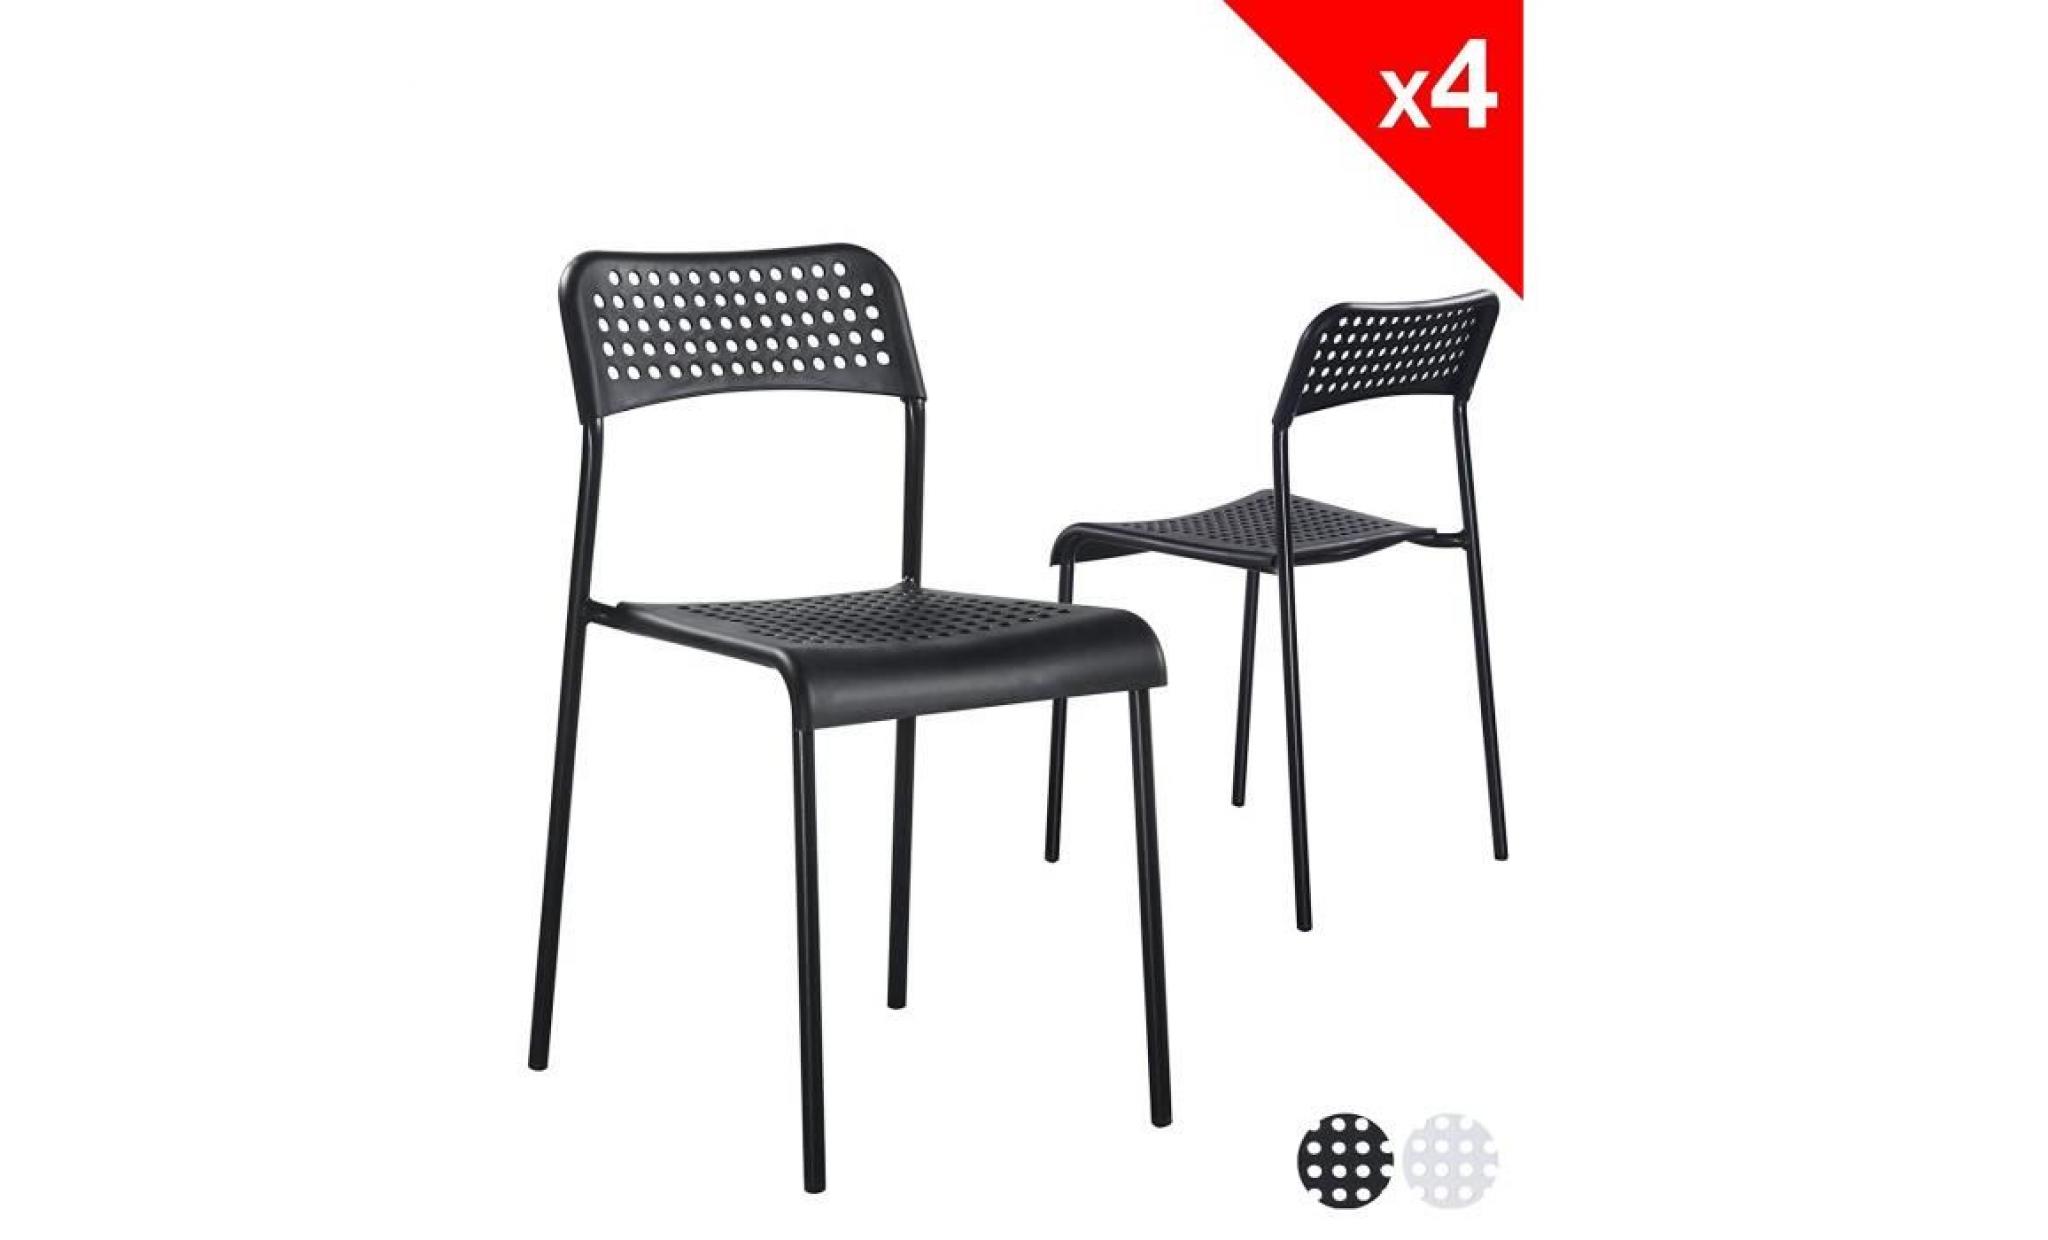 kayelles chaises empilables echo   lot de 4 chaises métal et pp (blanc)